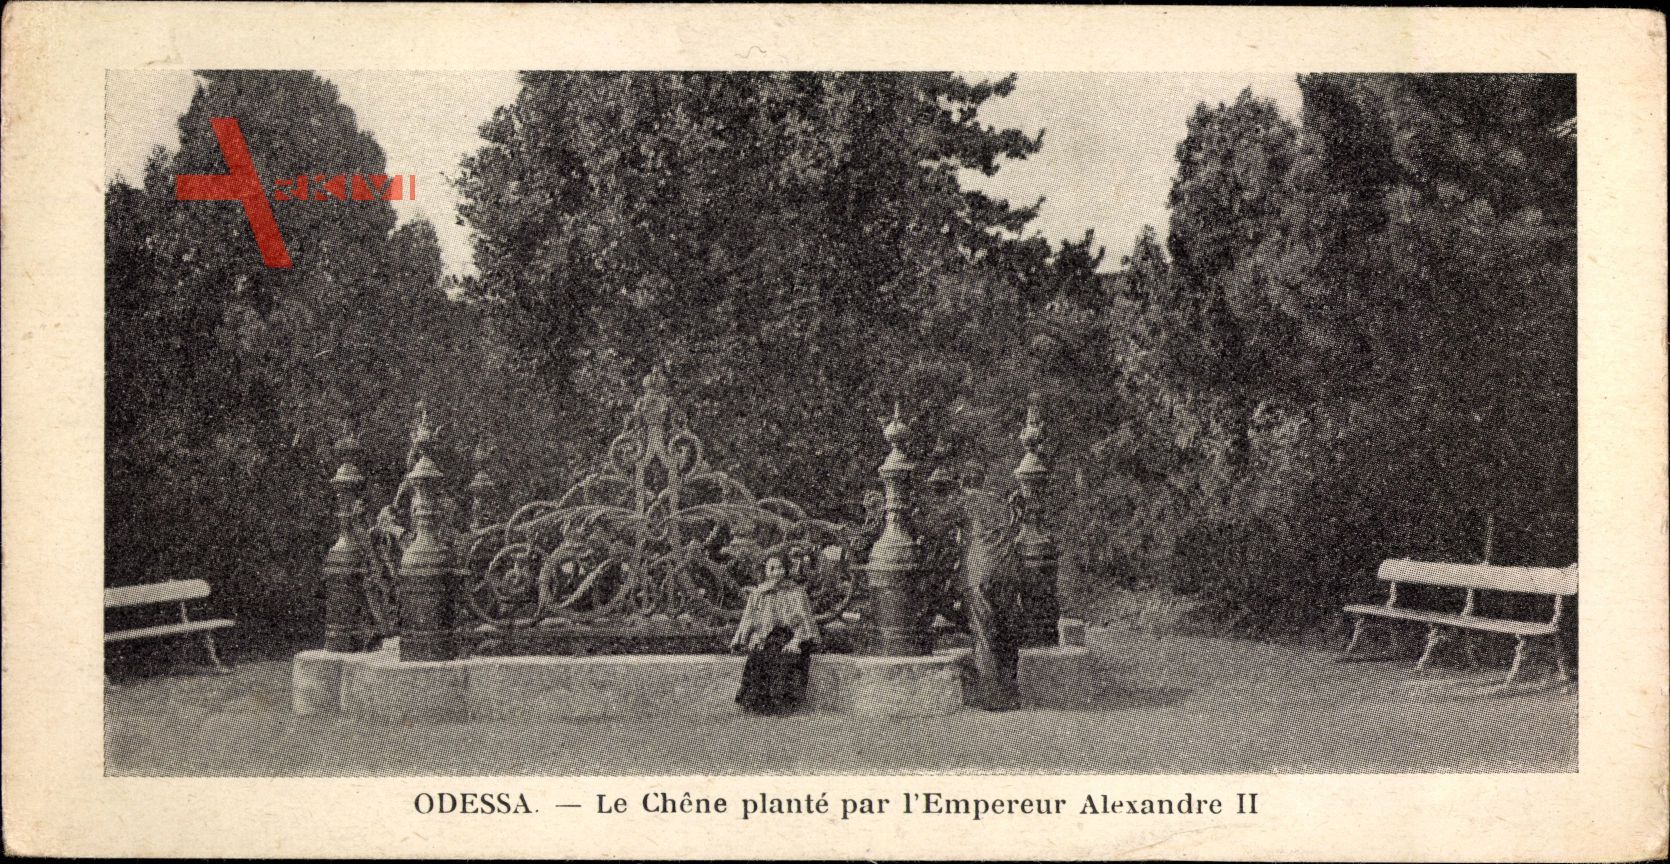 Odessa Ukraine, Le Chêne planté par l'Empereur Alexandre II.